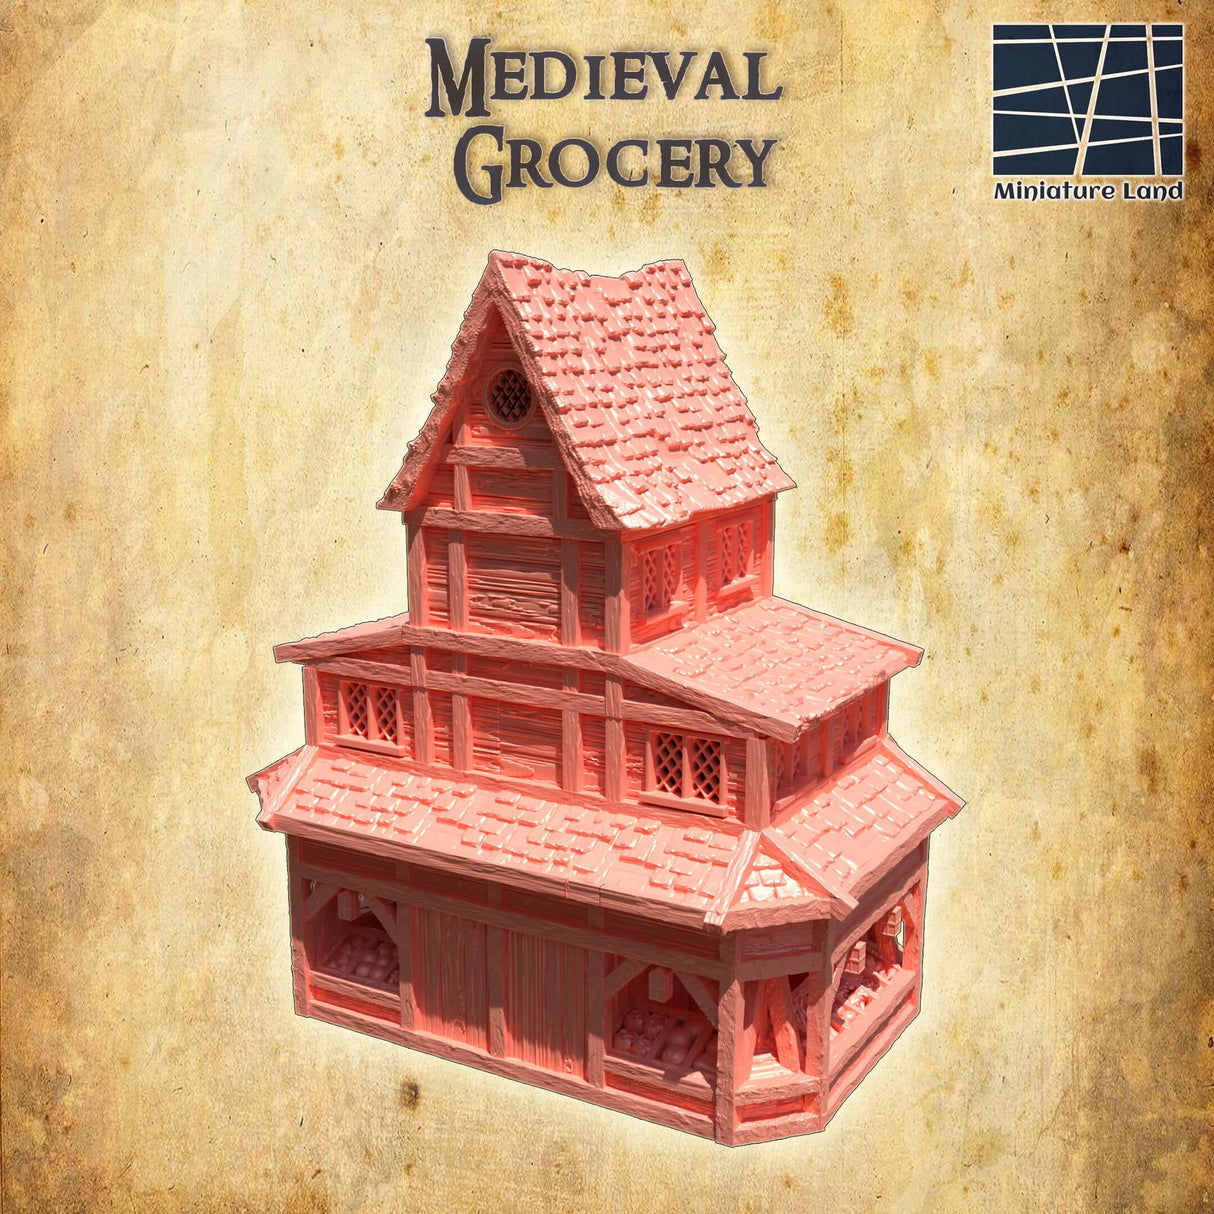 FDM-gedrucktes mittelalterliches Lebensmittelhaus von Miniature Land